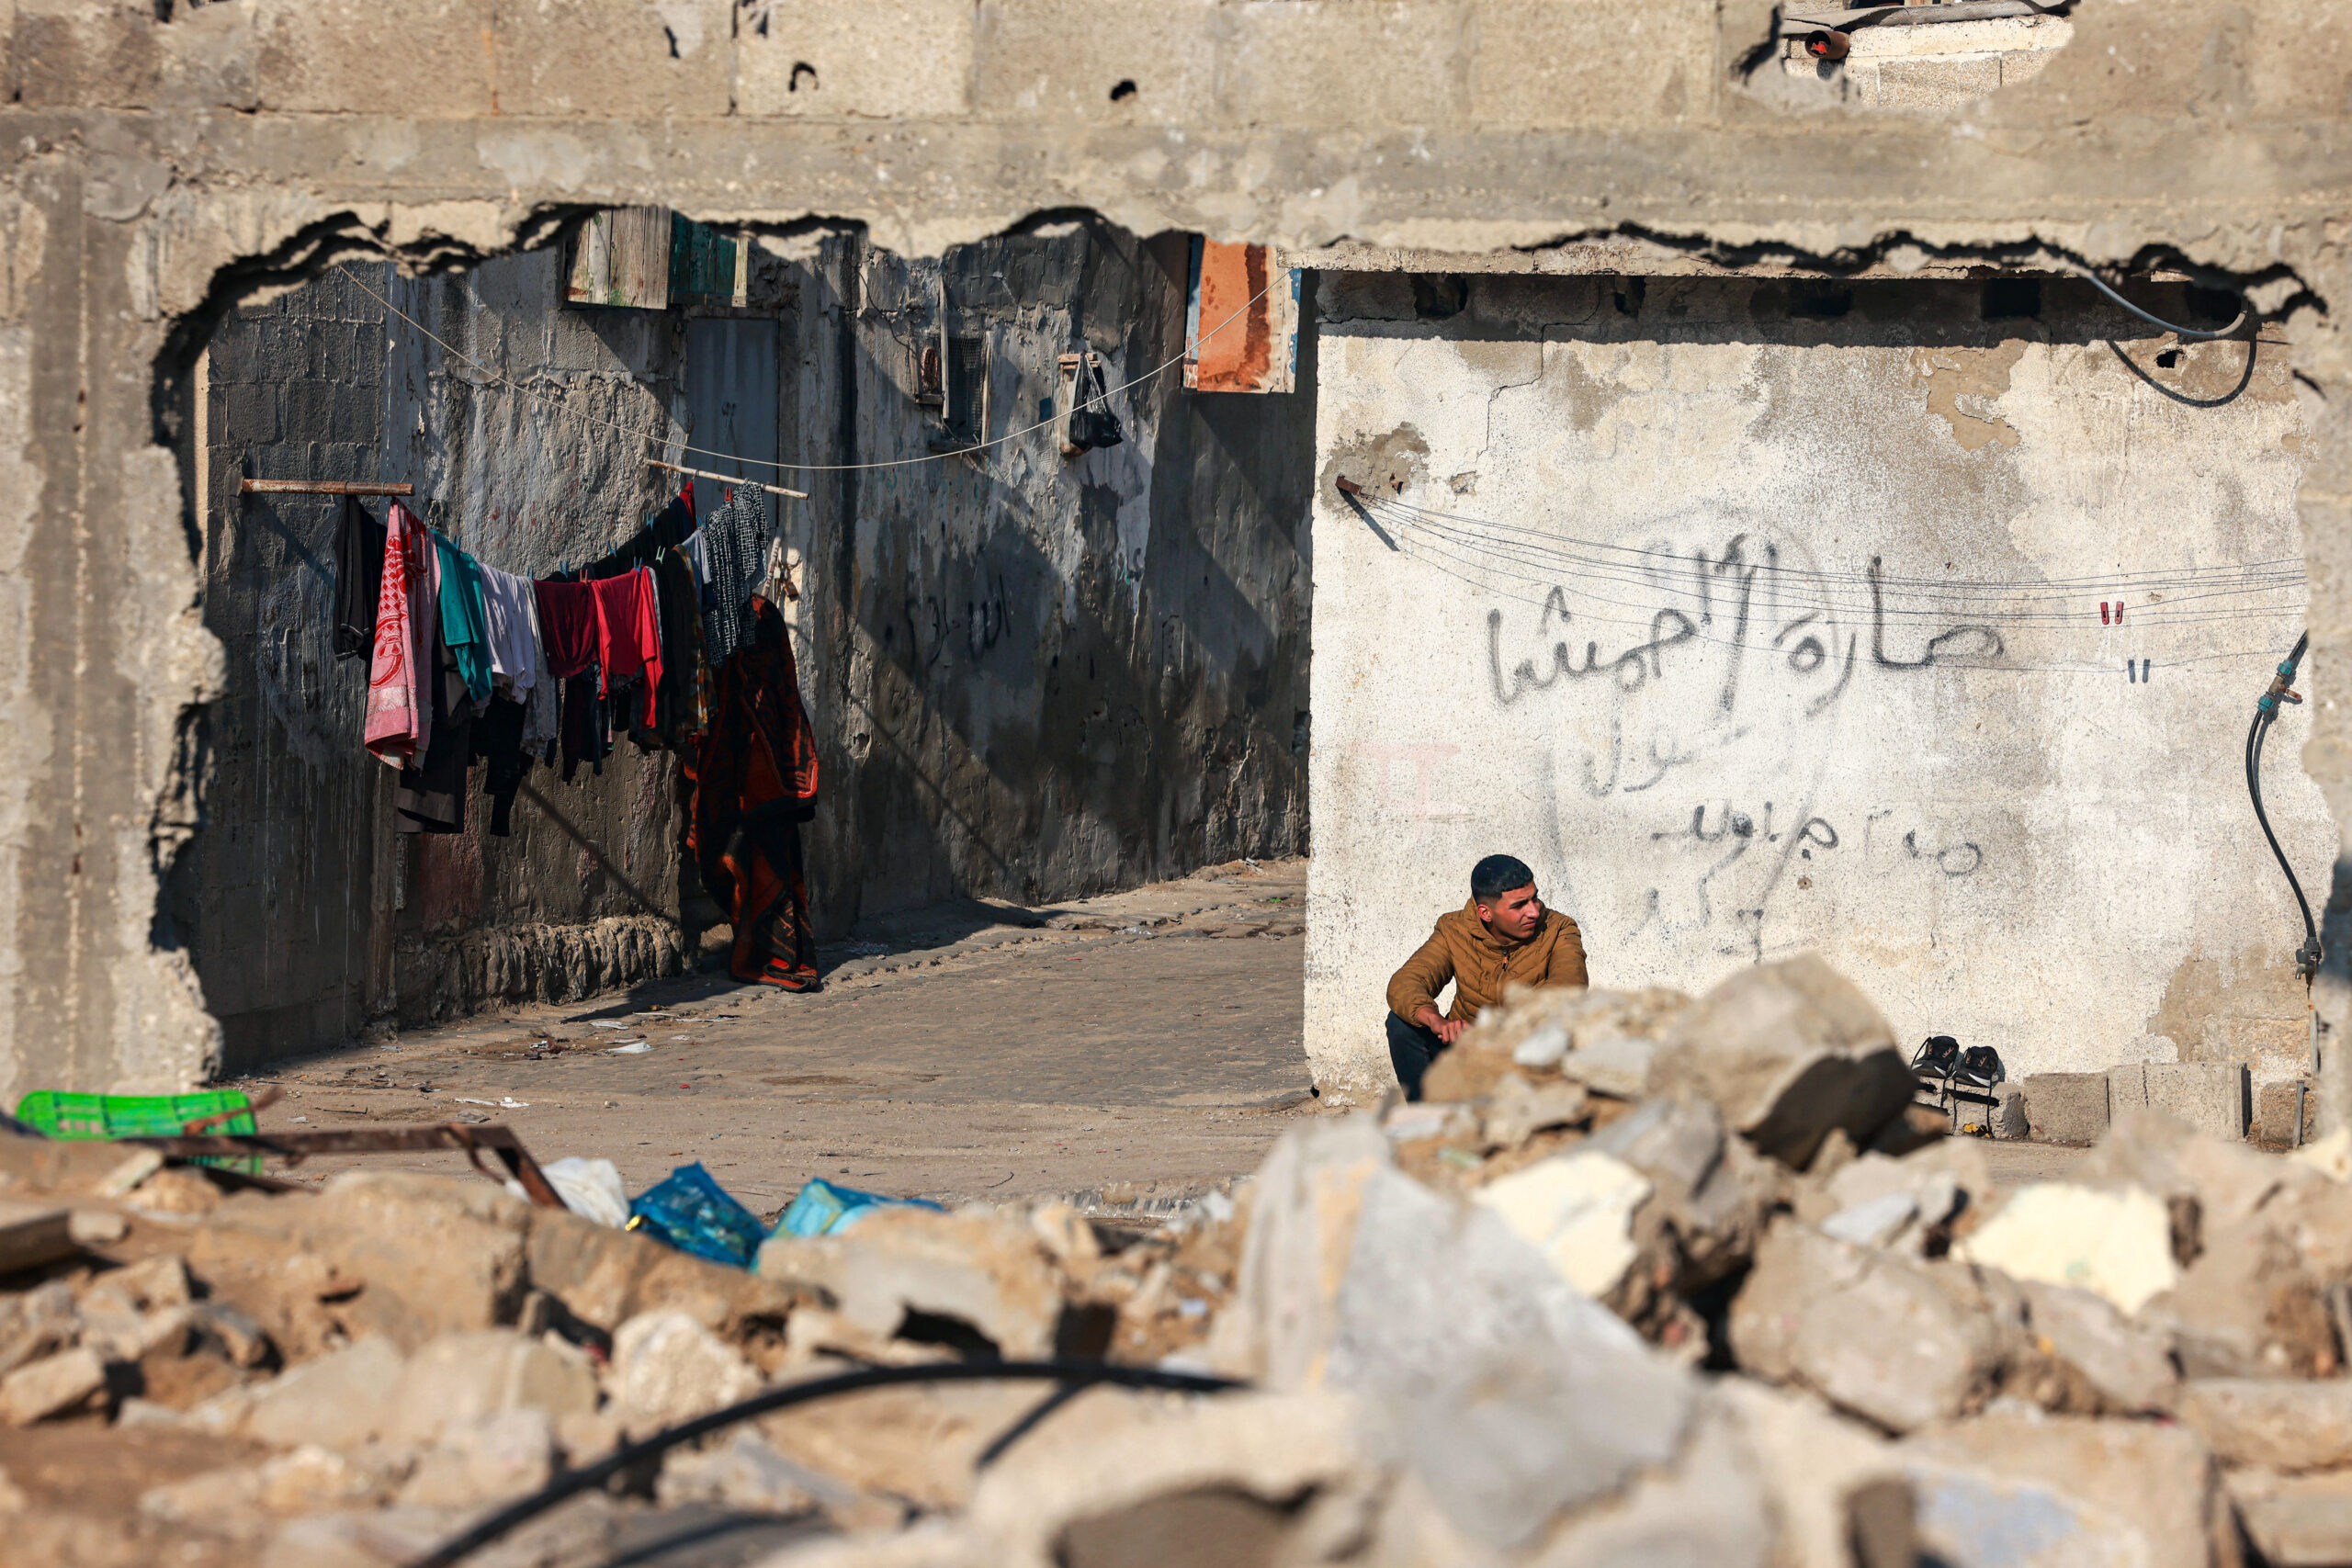 Rafah, la Francia deplora duramente l'attacco di Israele che provocherà una nuova catastrofe tra i civili